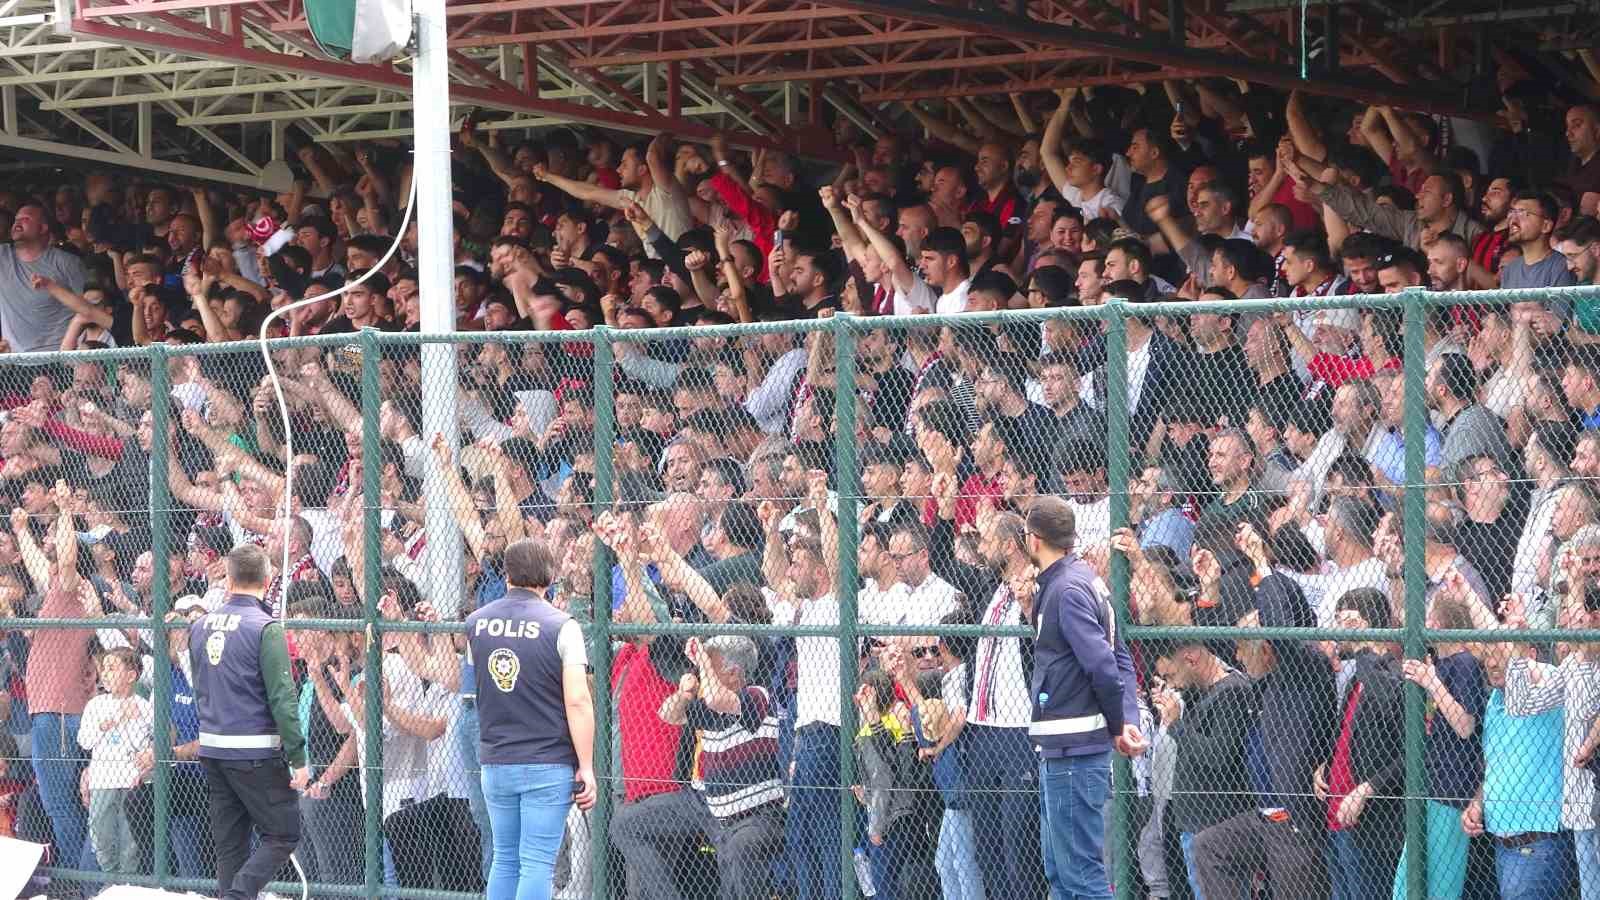 Yozgat Belediyesi Bozokspor, 3. Lig’e yükseldi
